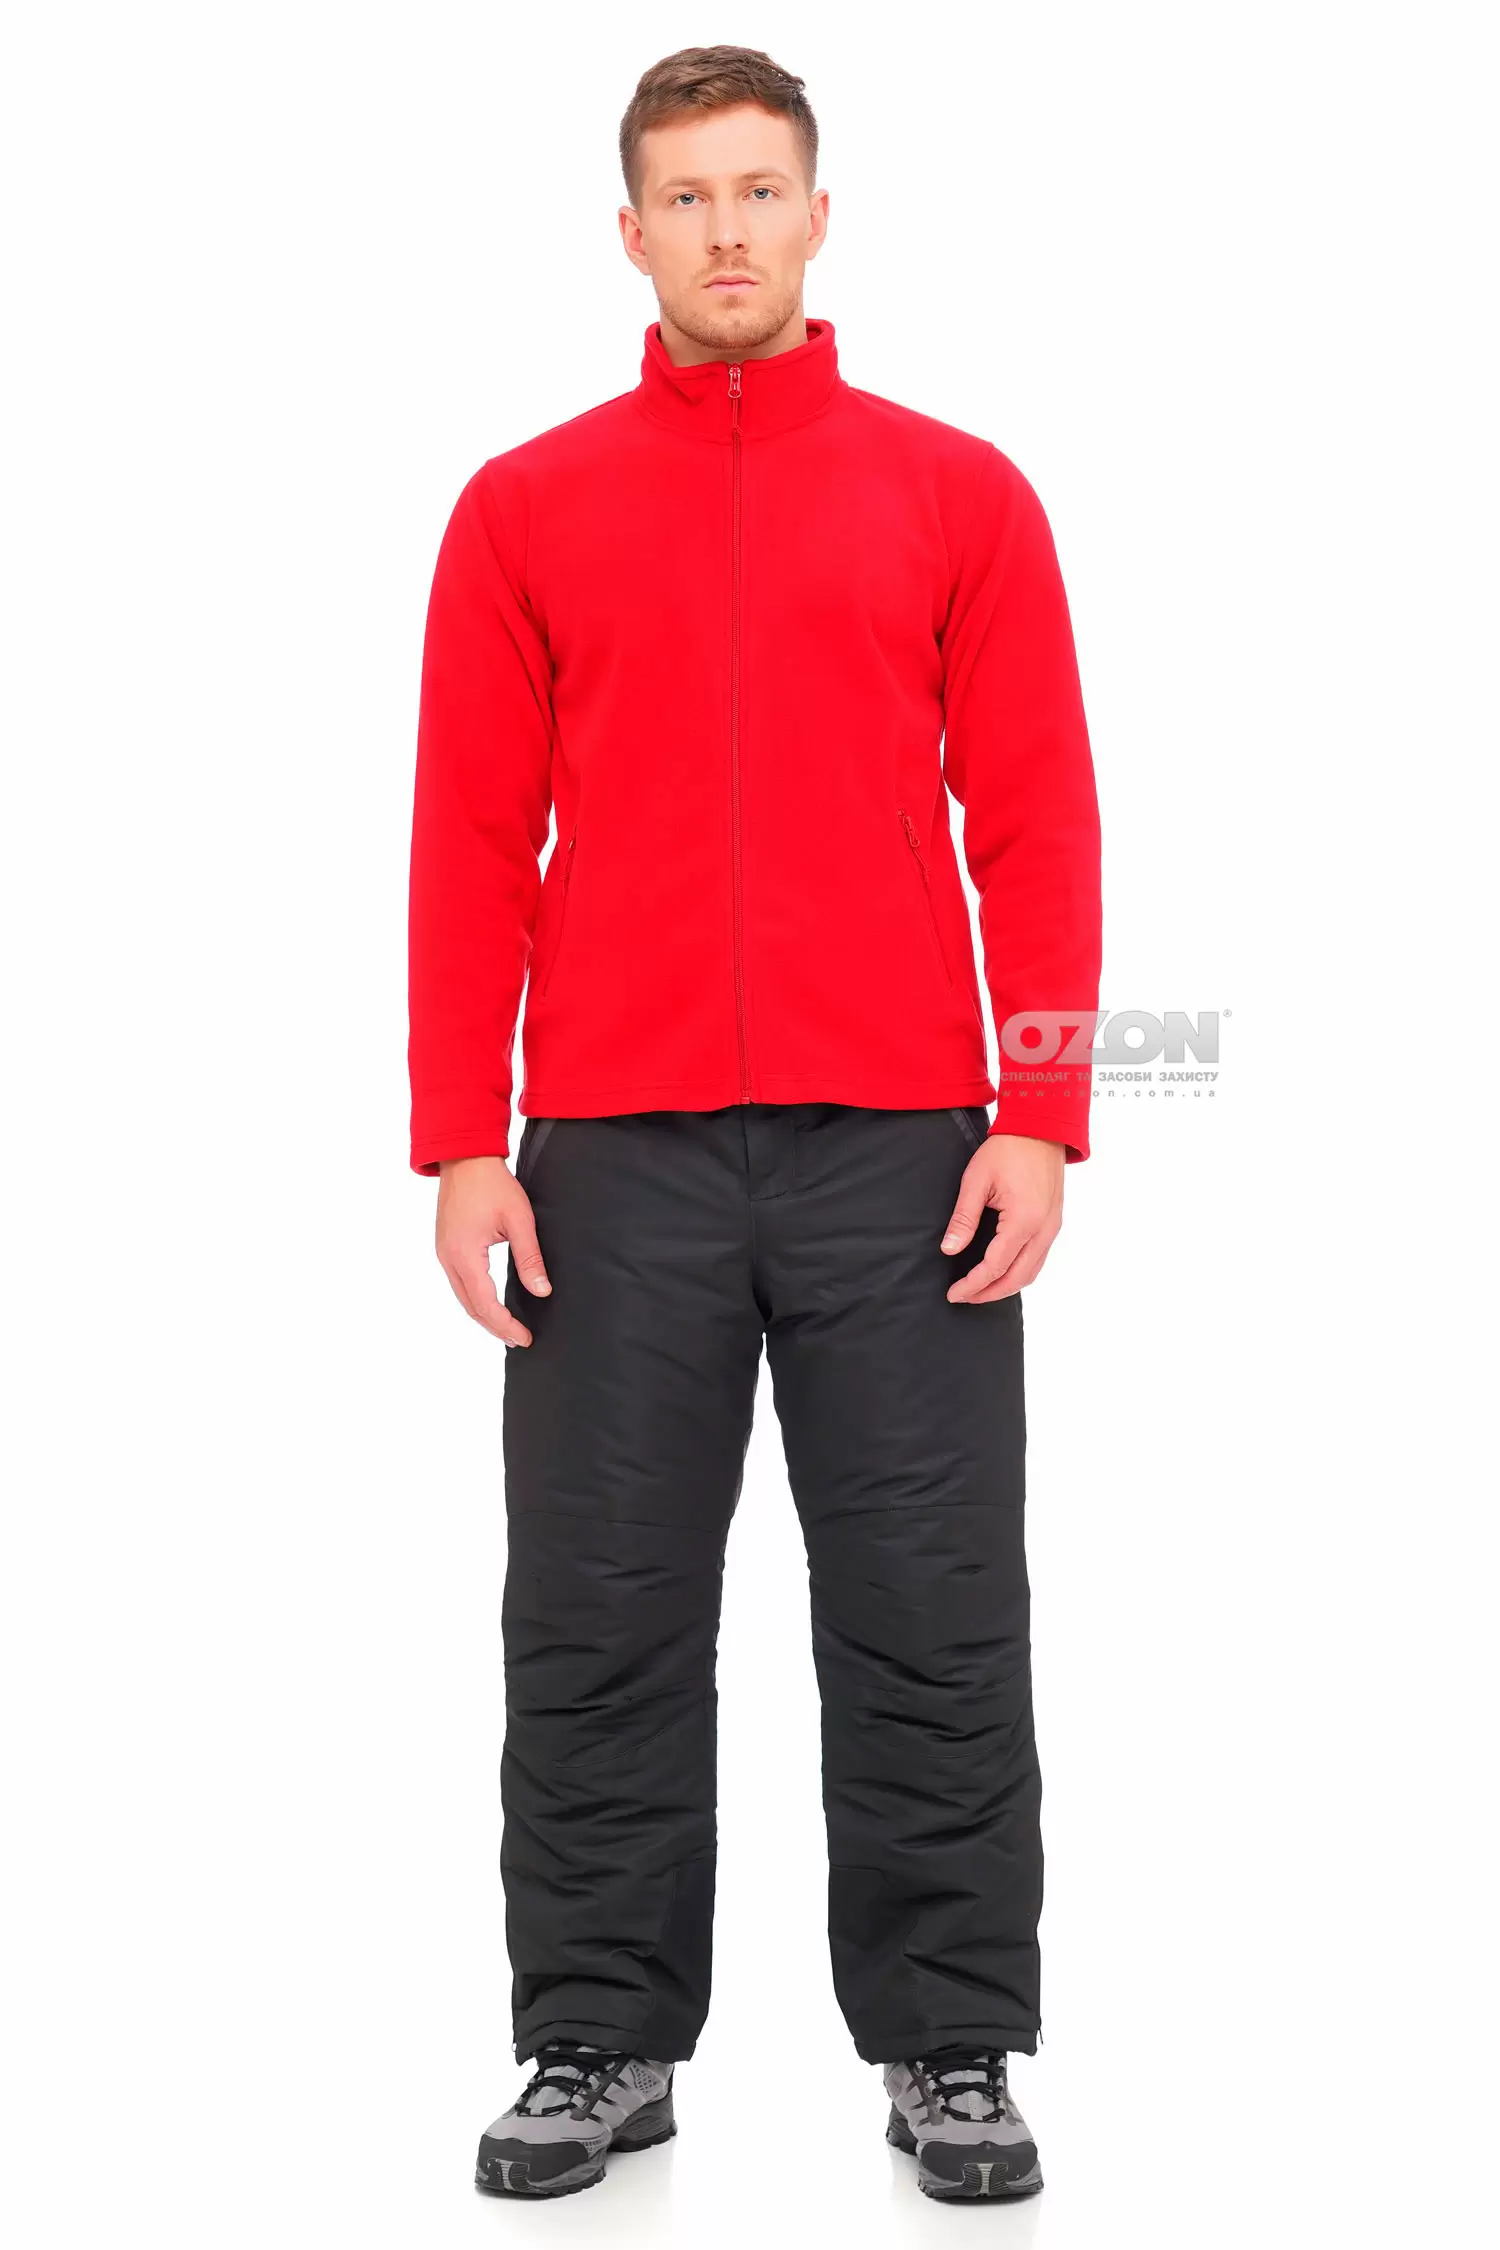 Куртка флисовая B&C DUO, красная, без капюшона - Фото 1